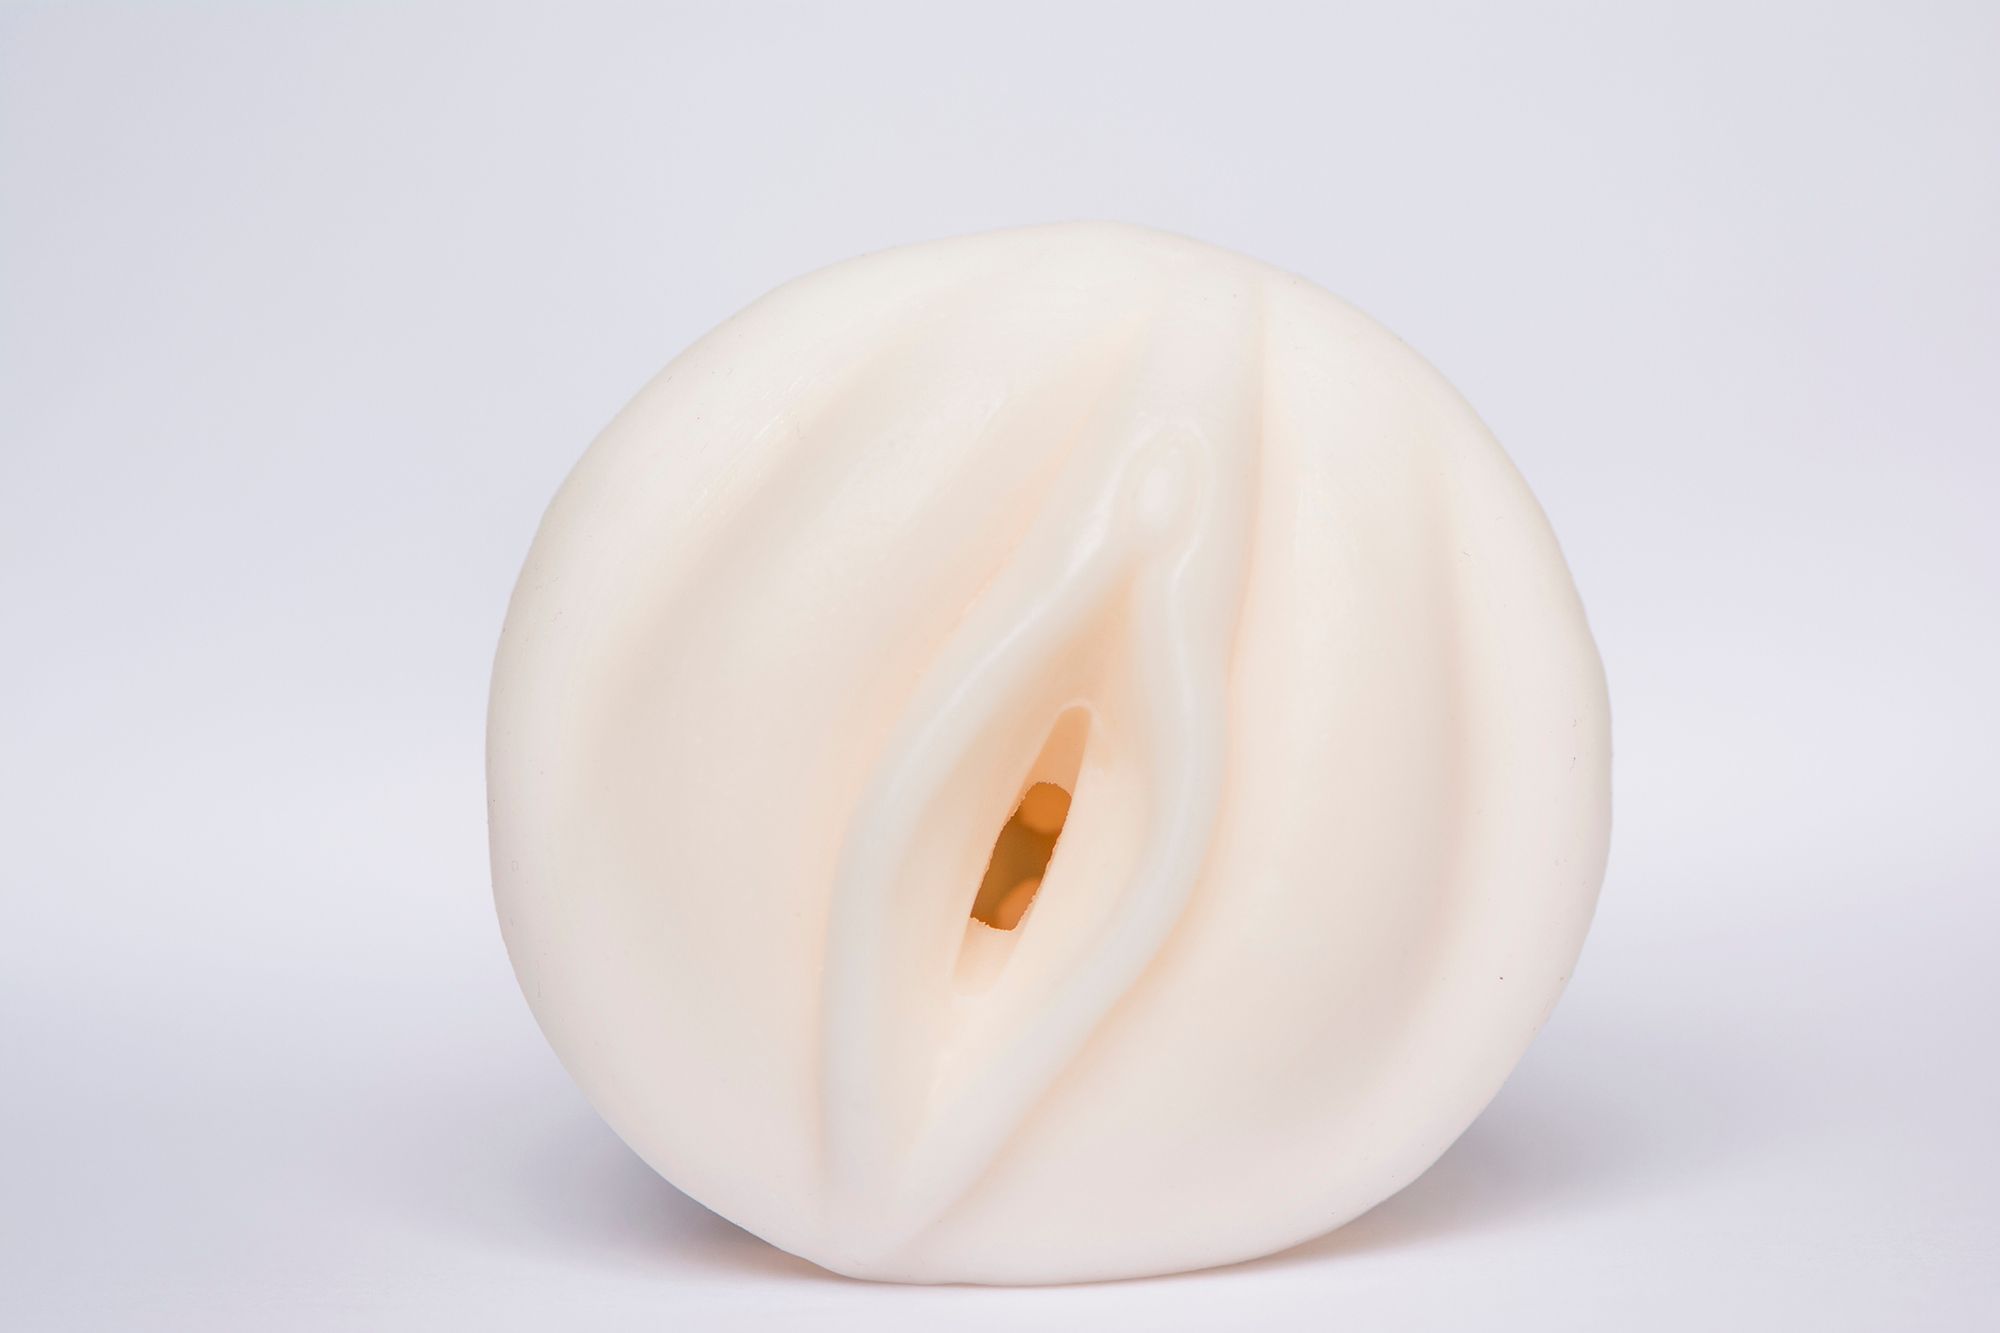 Vagina Furz - Abbildung eines Masturbators in Form einer Vagina.